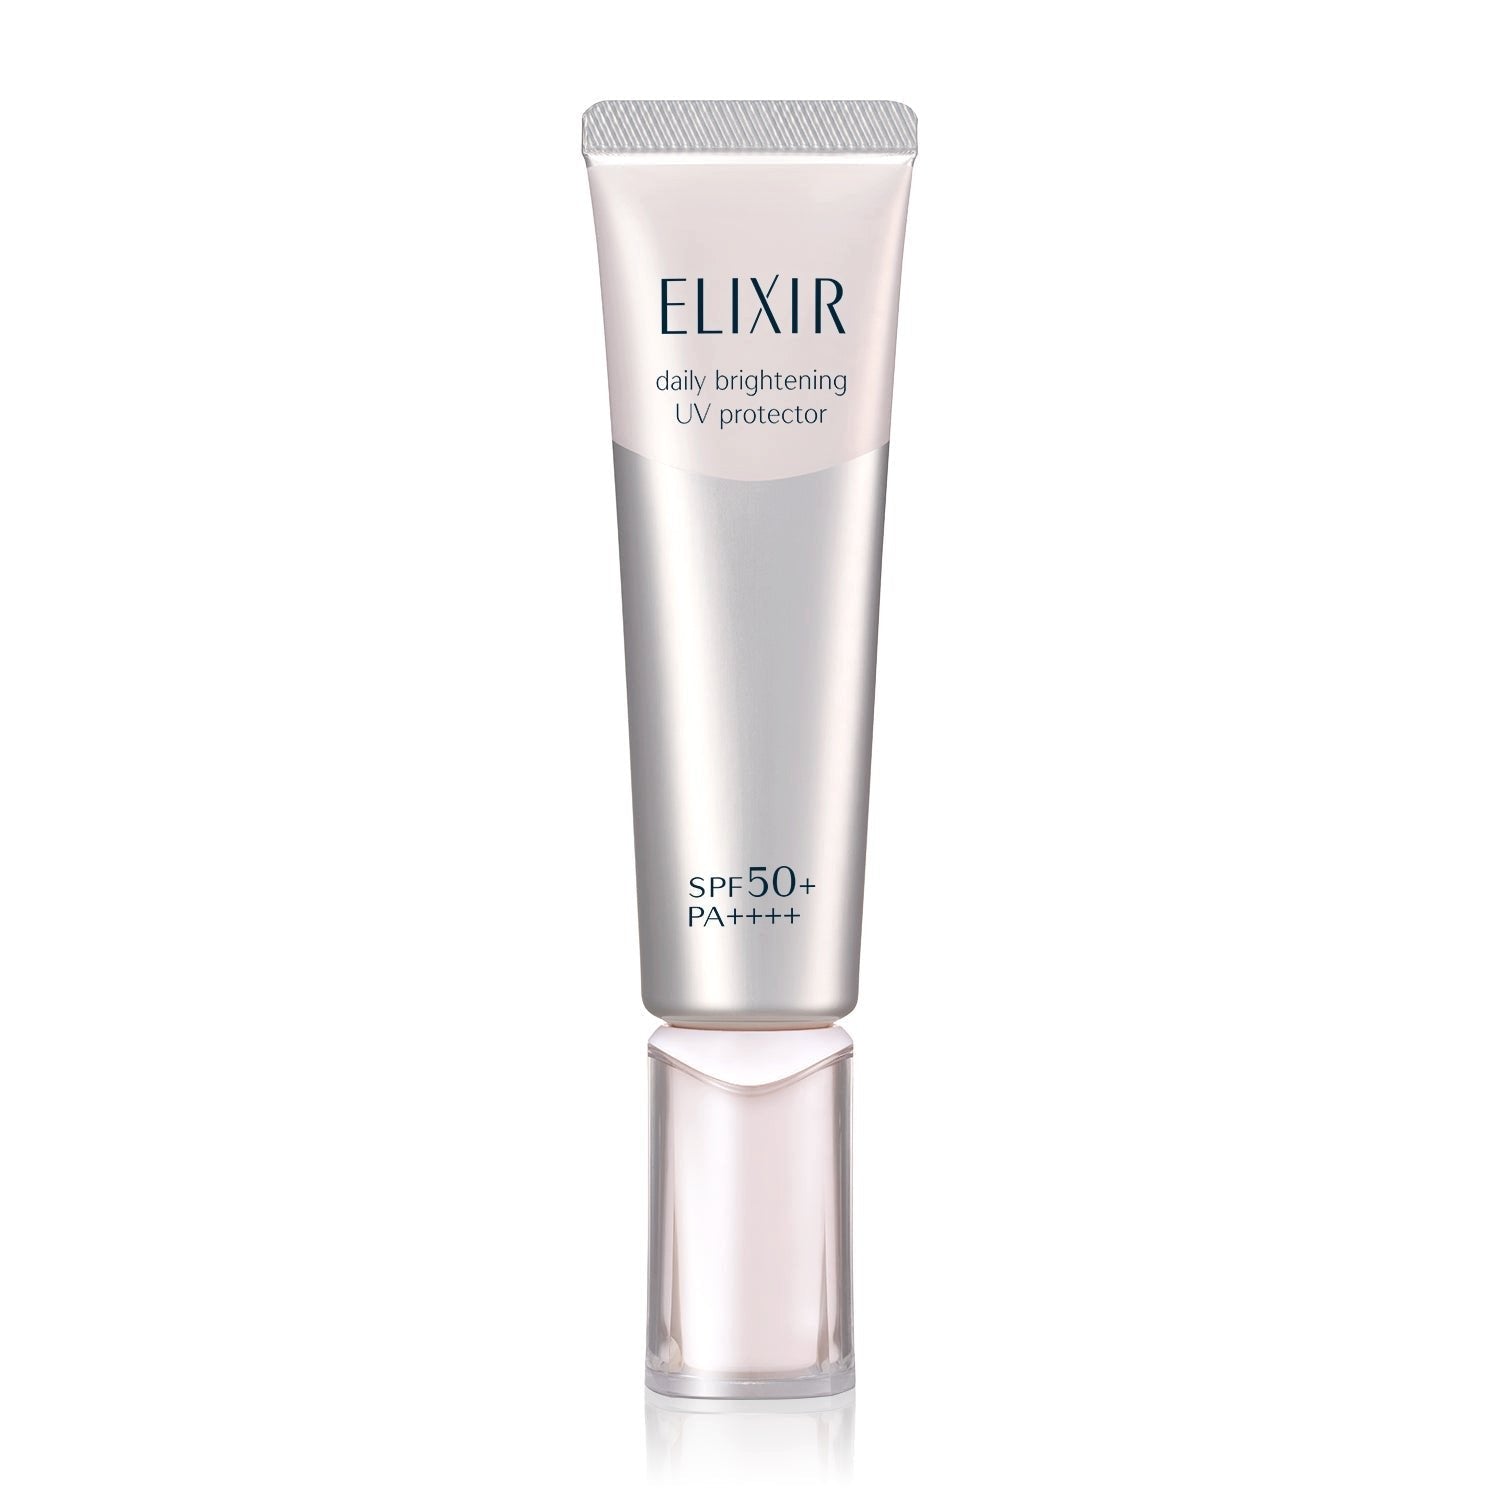 Shiseido Elixir Day Care Revolution Sunscreen Emulsion SPF50+ PA++++ 35ml